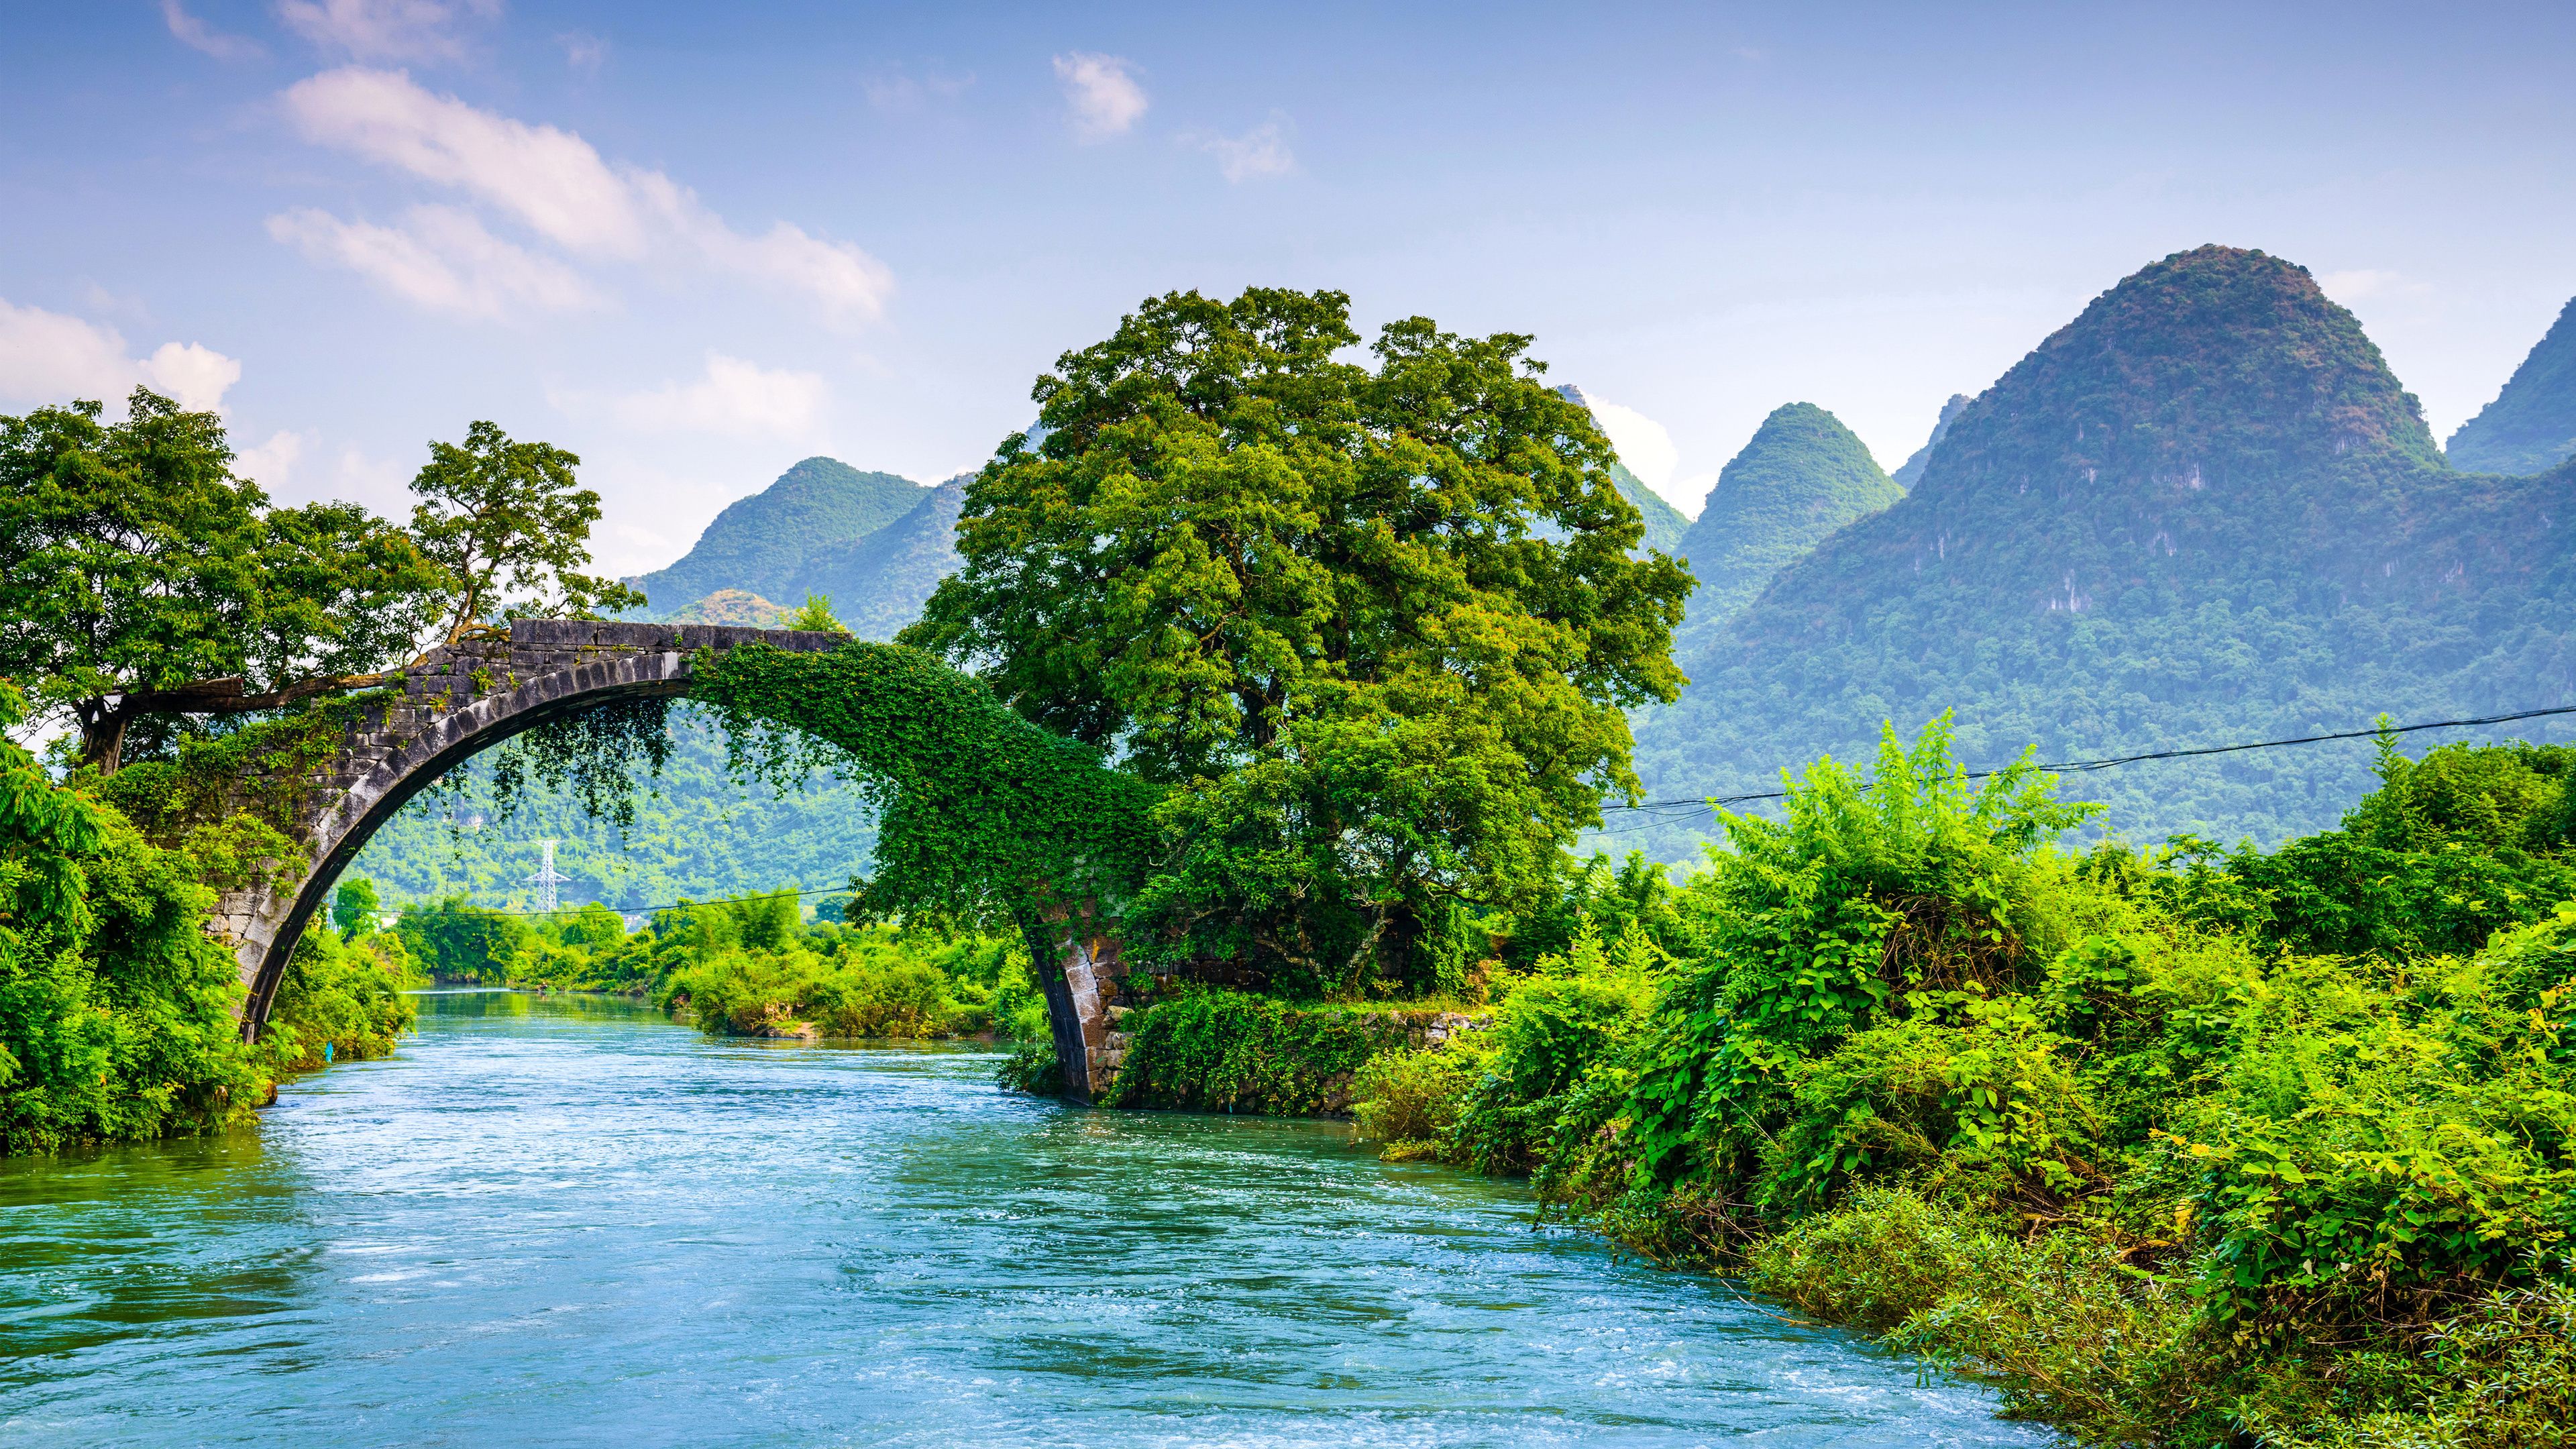 Hình ảnh đẹp thiên nhiên Việt Nam chất lượng cao, Full HD, 4K, sắc nét -  Trung Tâm Đào Tạo Việt Á